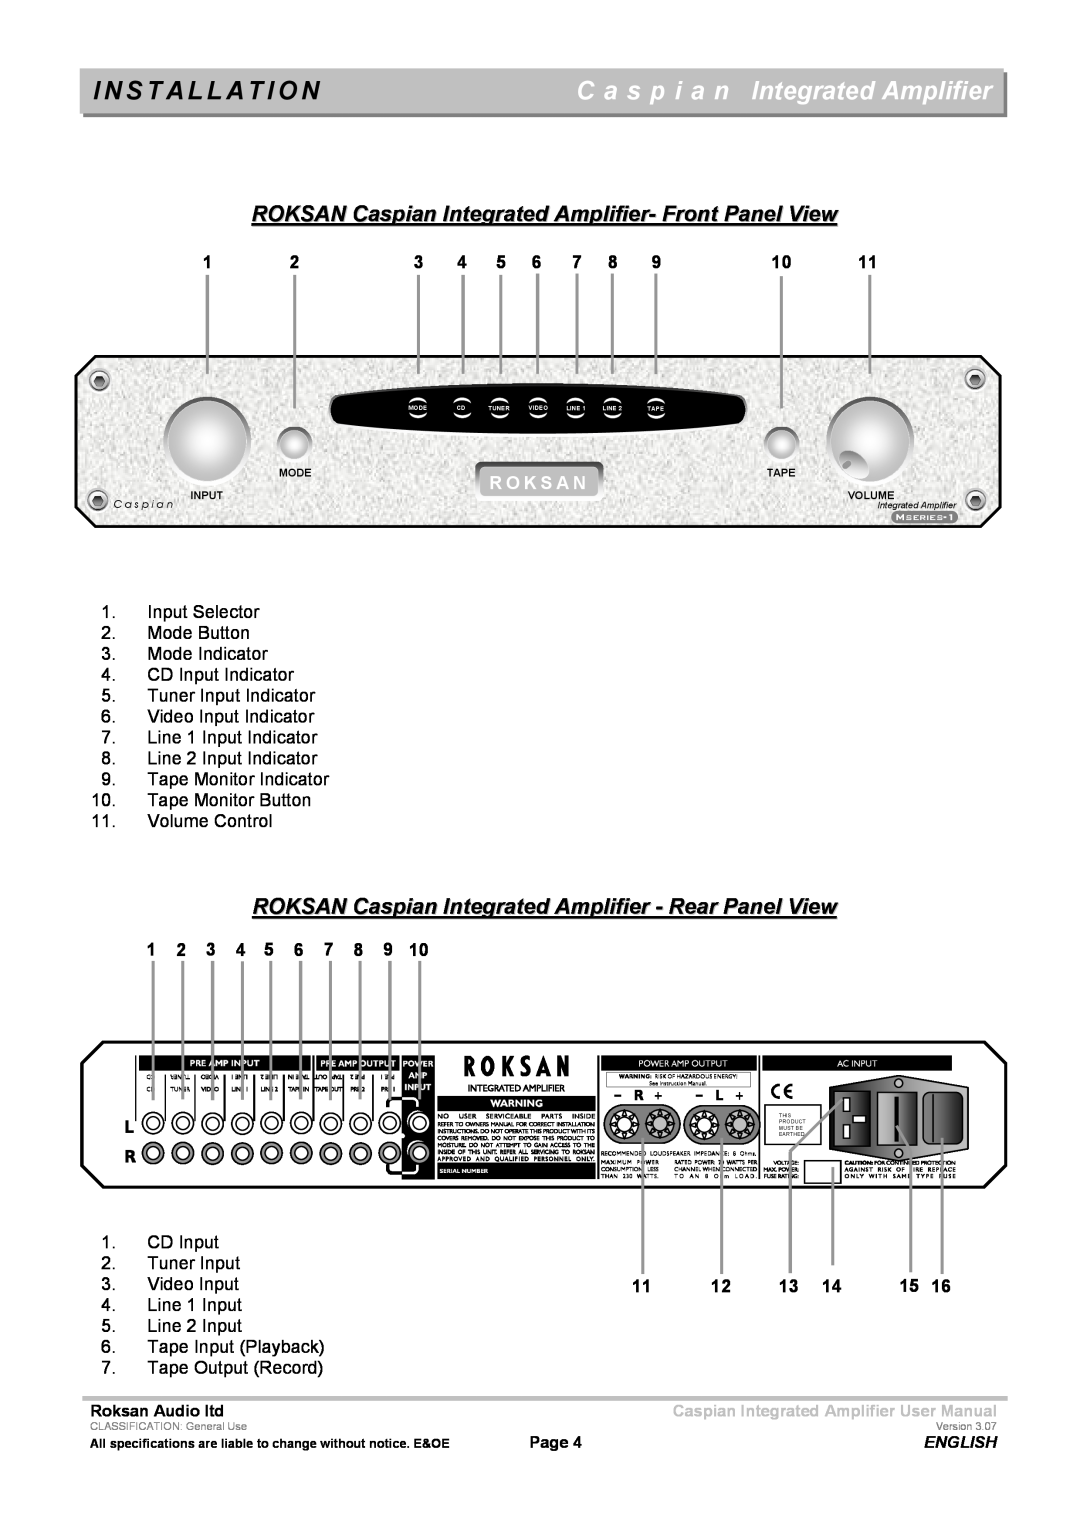 Roksan Audio M series -1 user manual I N S T A L L A T I O N, C a s p i a n Integrated Amplifier 